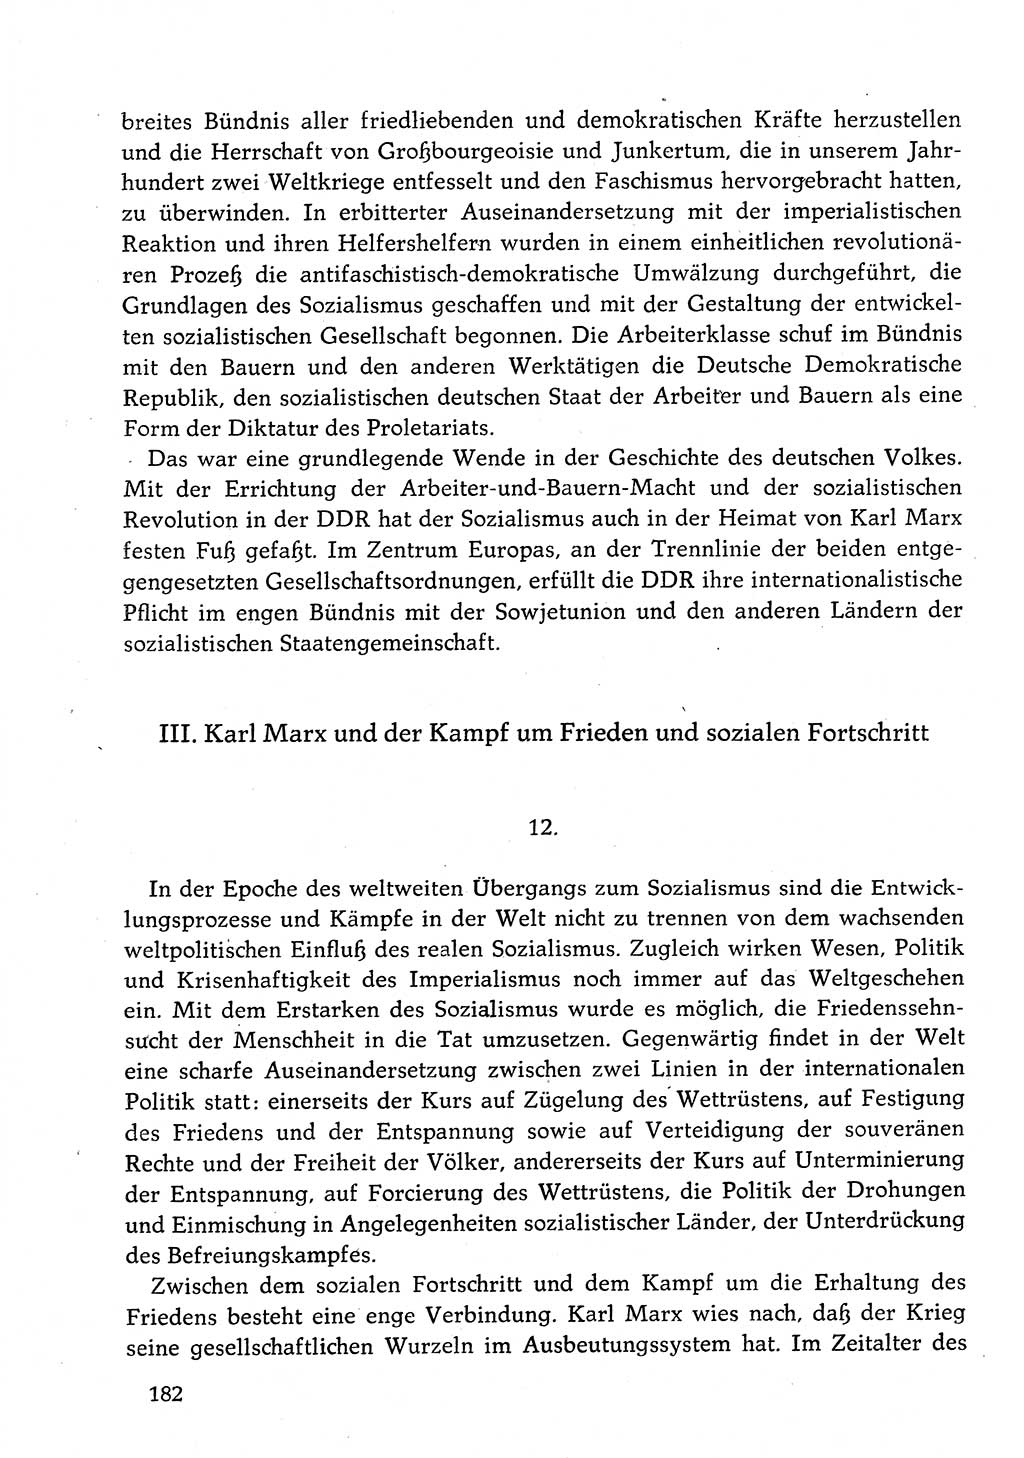 Dokumente der Sozialistischen Einheitspartei Deutschlands (SED) [Deutsche Demokratische Republik (DDR)] 1982-1983, Seite 182 (Dok. SED DDR 1982-1983, S. 182)